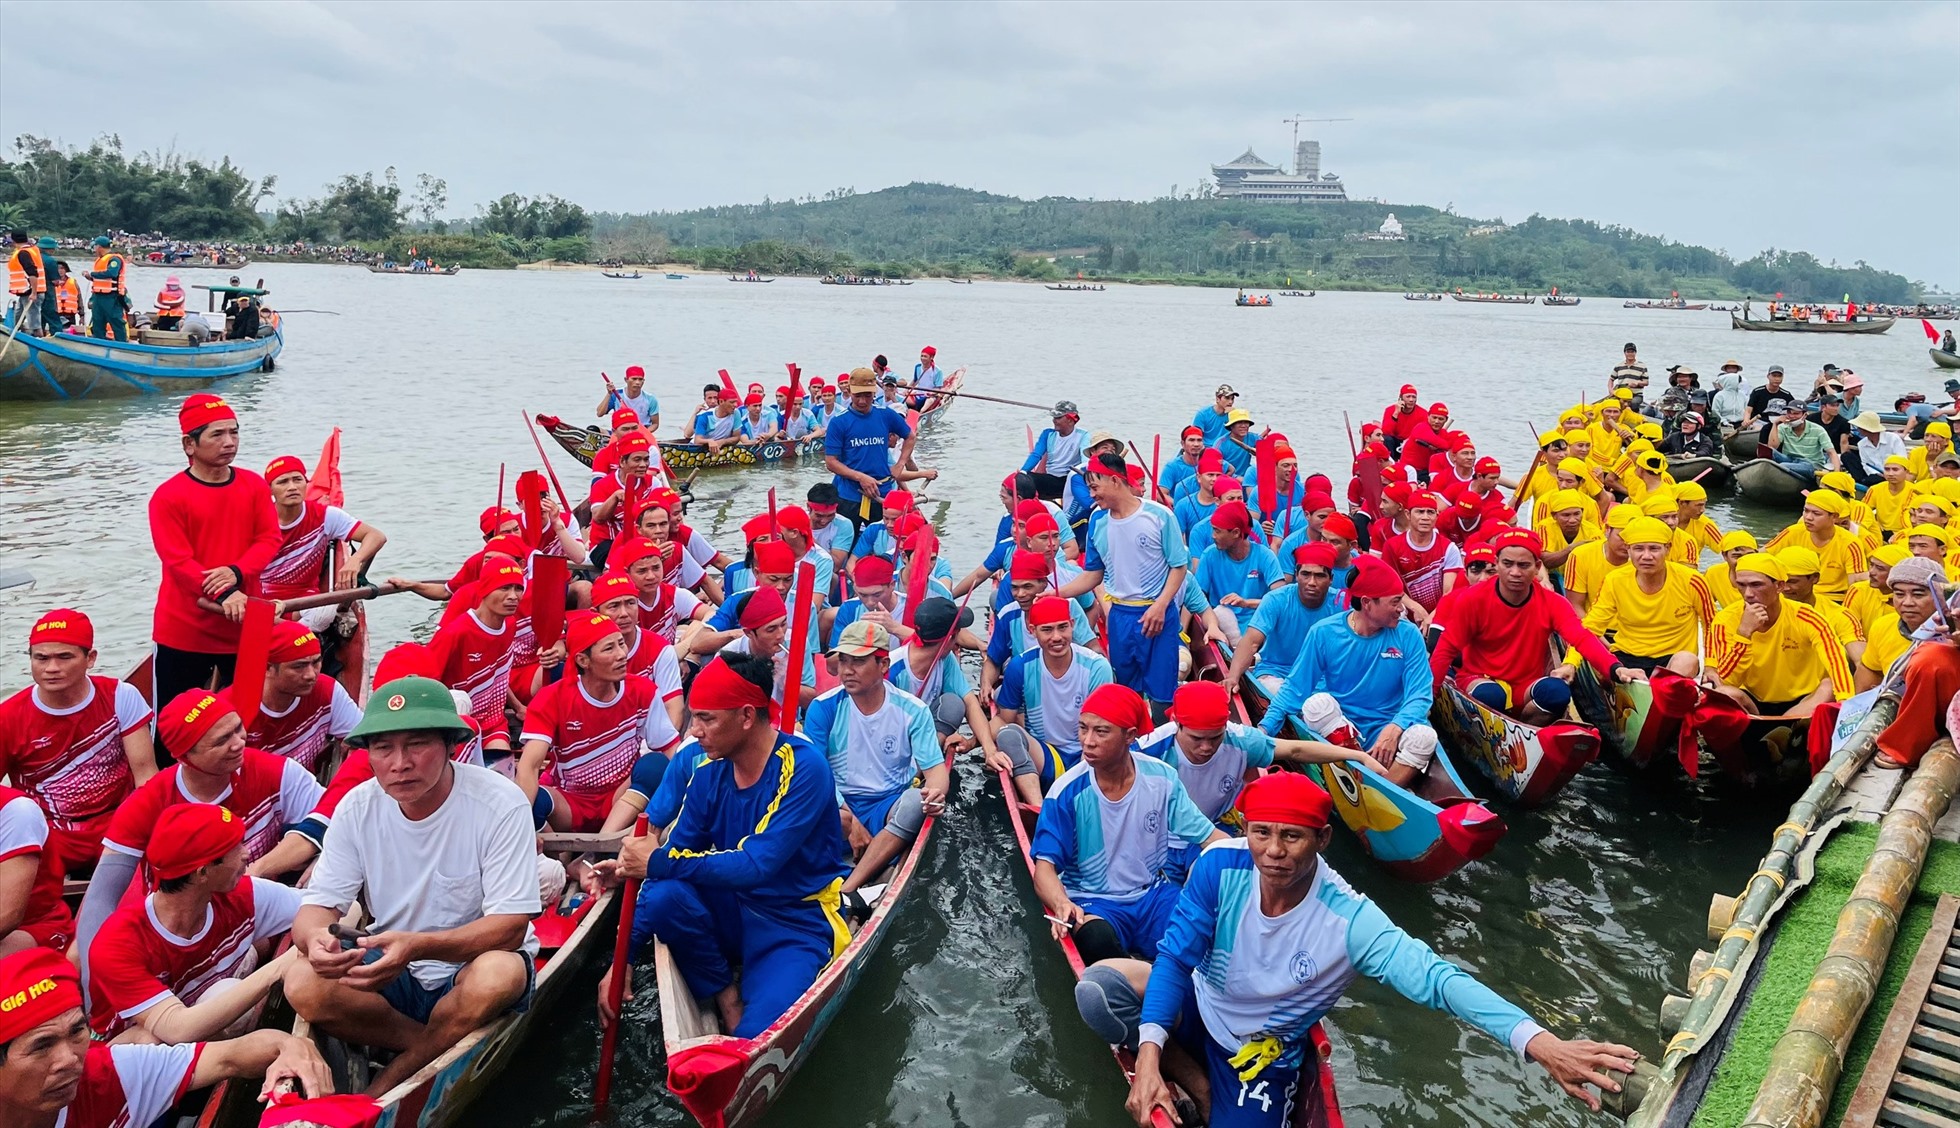 Lễ hội đua thuyền tứ linh có 4 đội đua đến từ 4 thôn trong xã là An Lộc, Tăng Long, An Đạo, Gia Hòa. Ảnh: Ngọc Viên